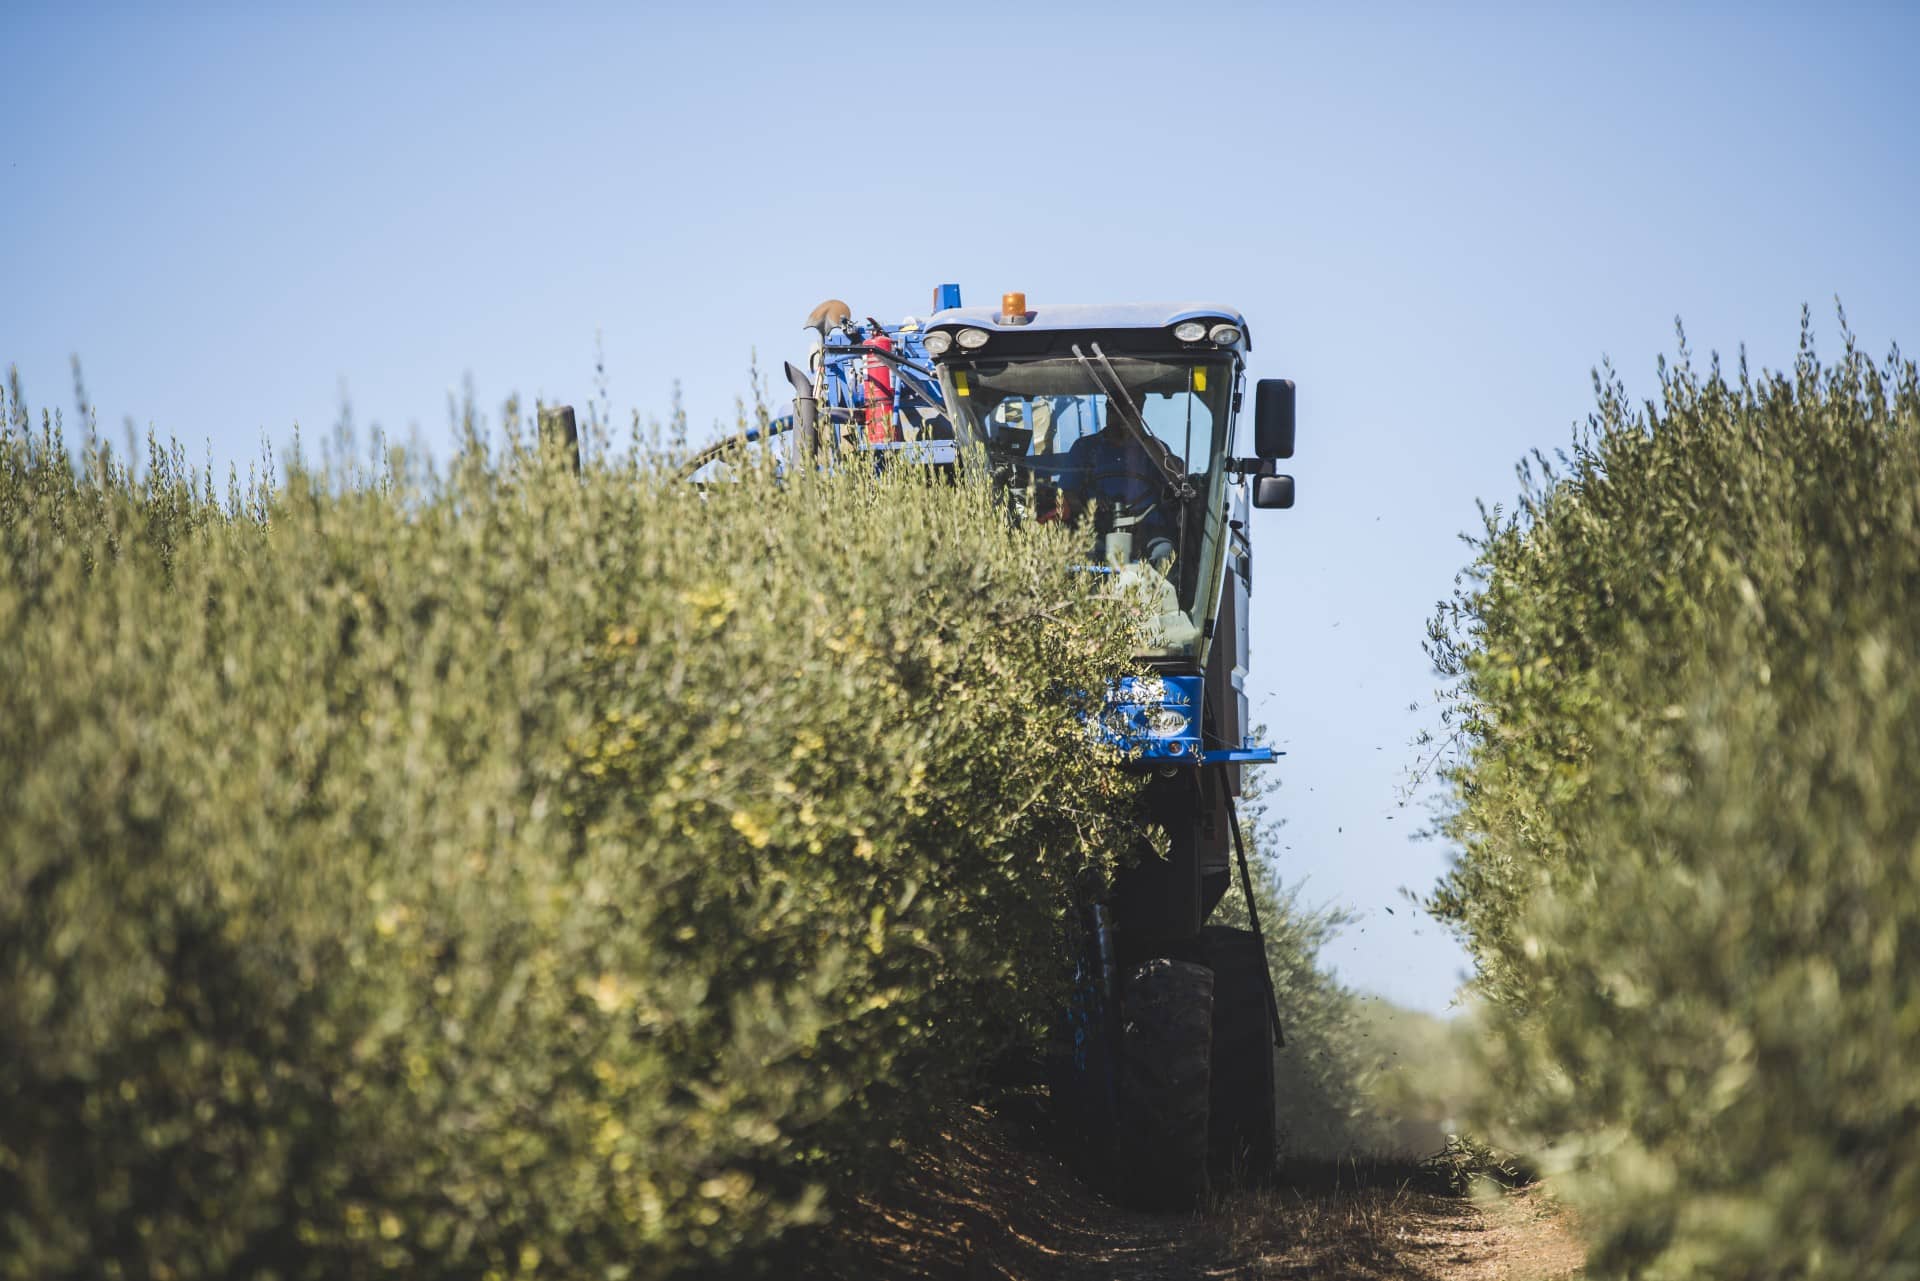 επιχείρηση-παραγωγή-νότια-αμερική-ξηρασία-συνεχίζει-να-ανησυχεί-καλλιεργητές-στη-Χιλή-olive-oil-times